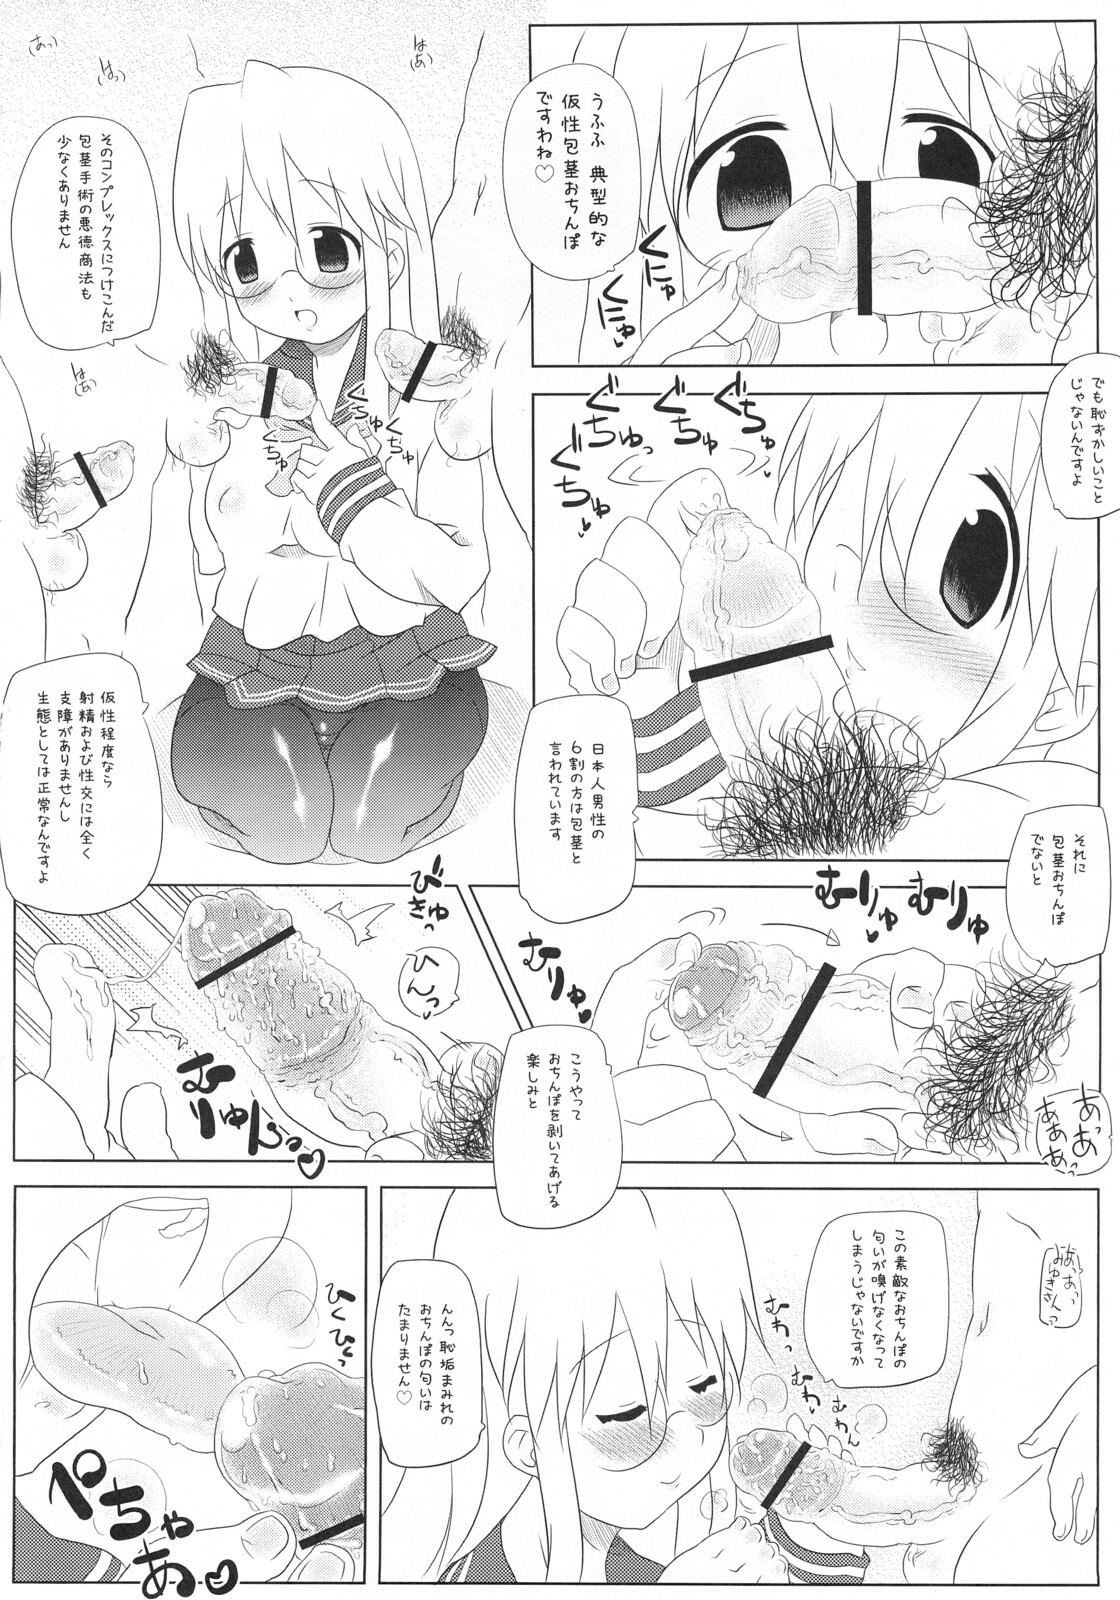 [Takatobiya] Motteke! Panty Stocking (Lucky Star) page 5 full